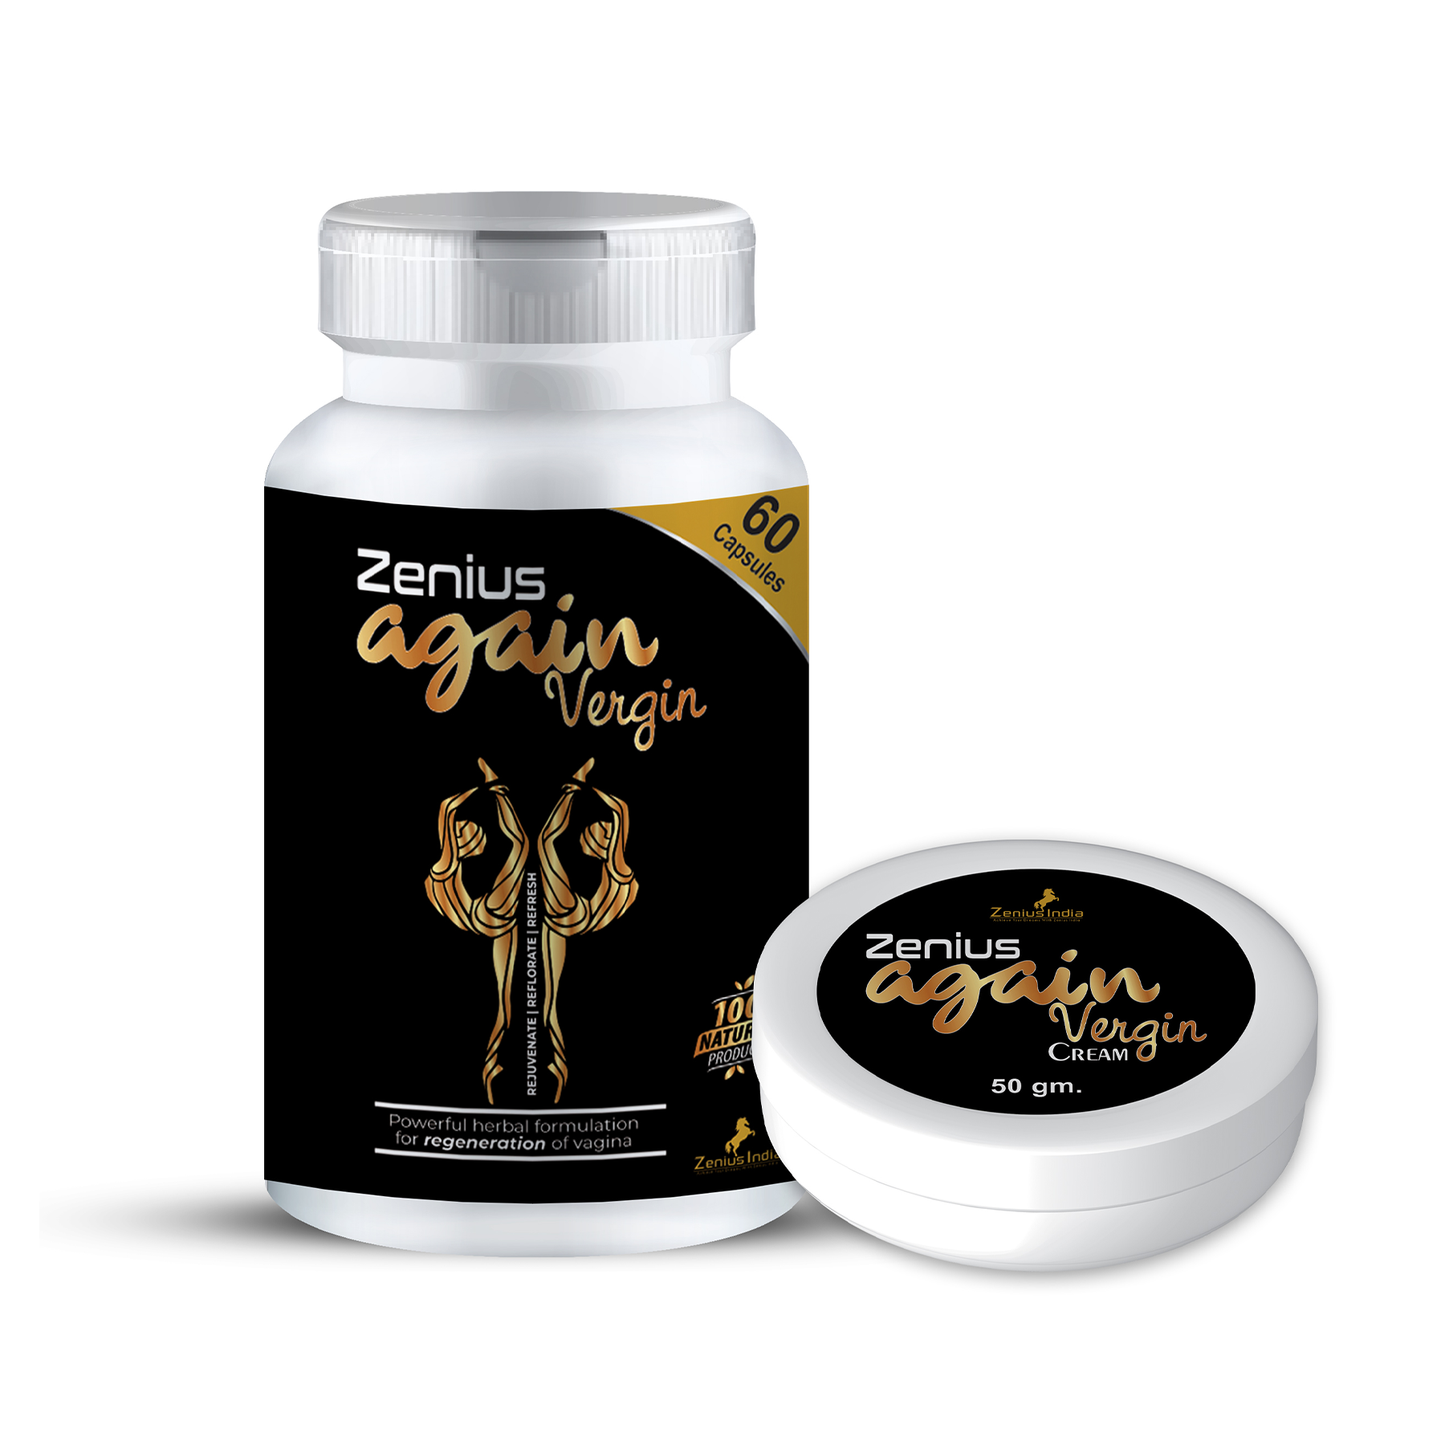 Zenius Again Vergain Kit (60 Capsules & 50gm Cream)